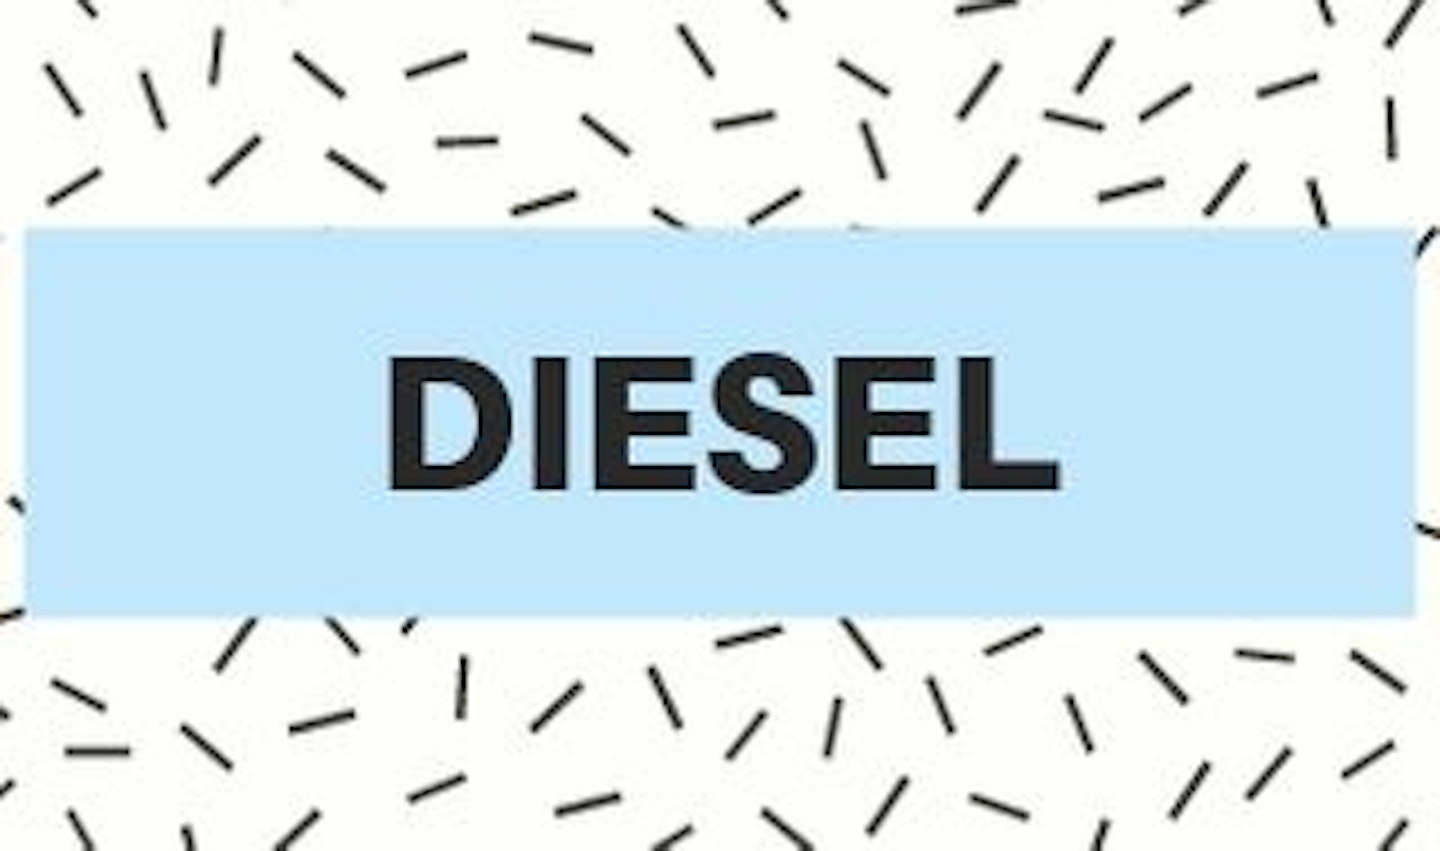 3) Diesel